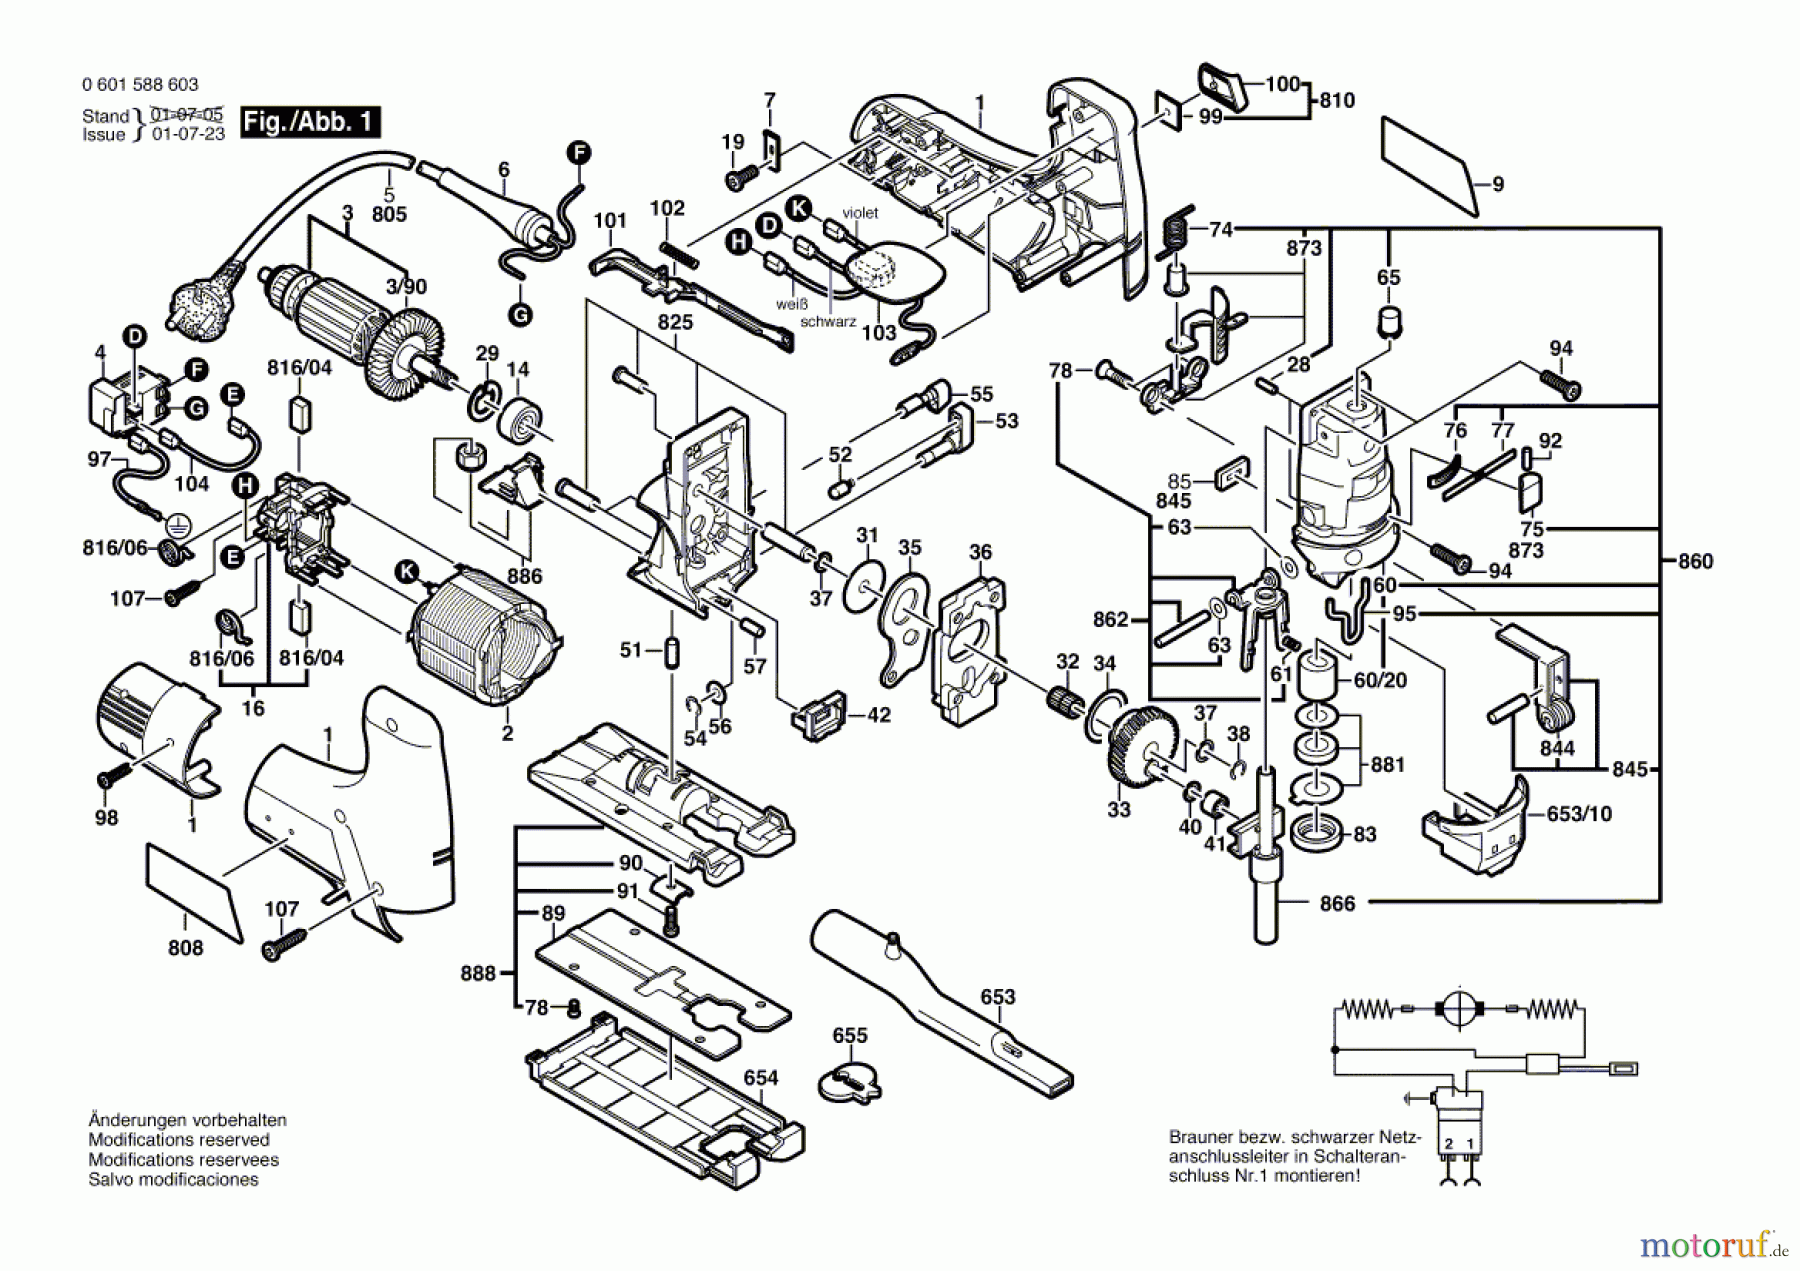  Bosch Werkzeug Stichsäge STS 110 CE Seite 1